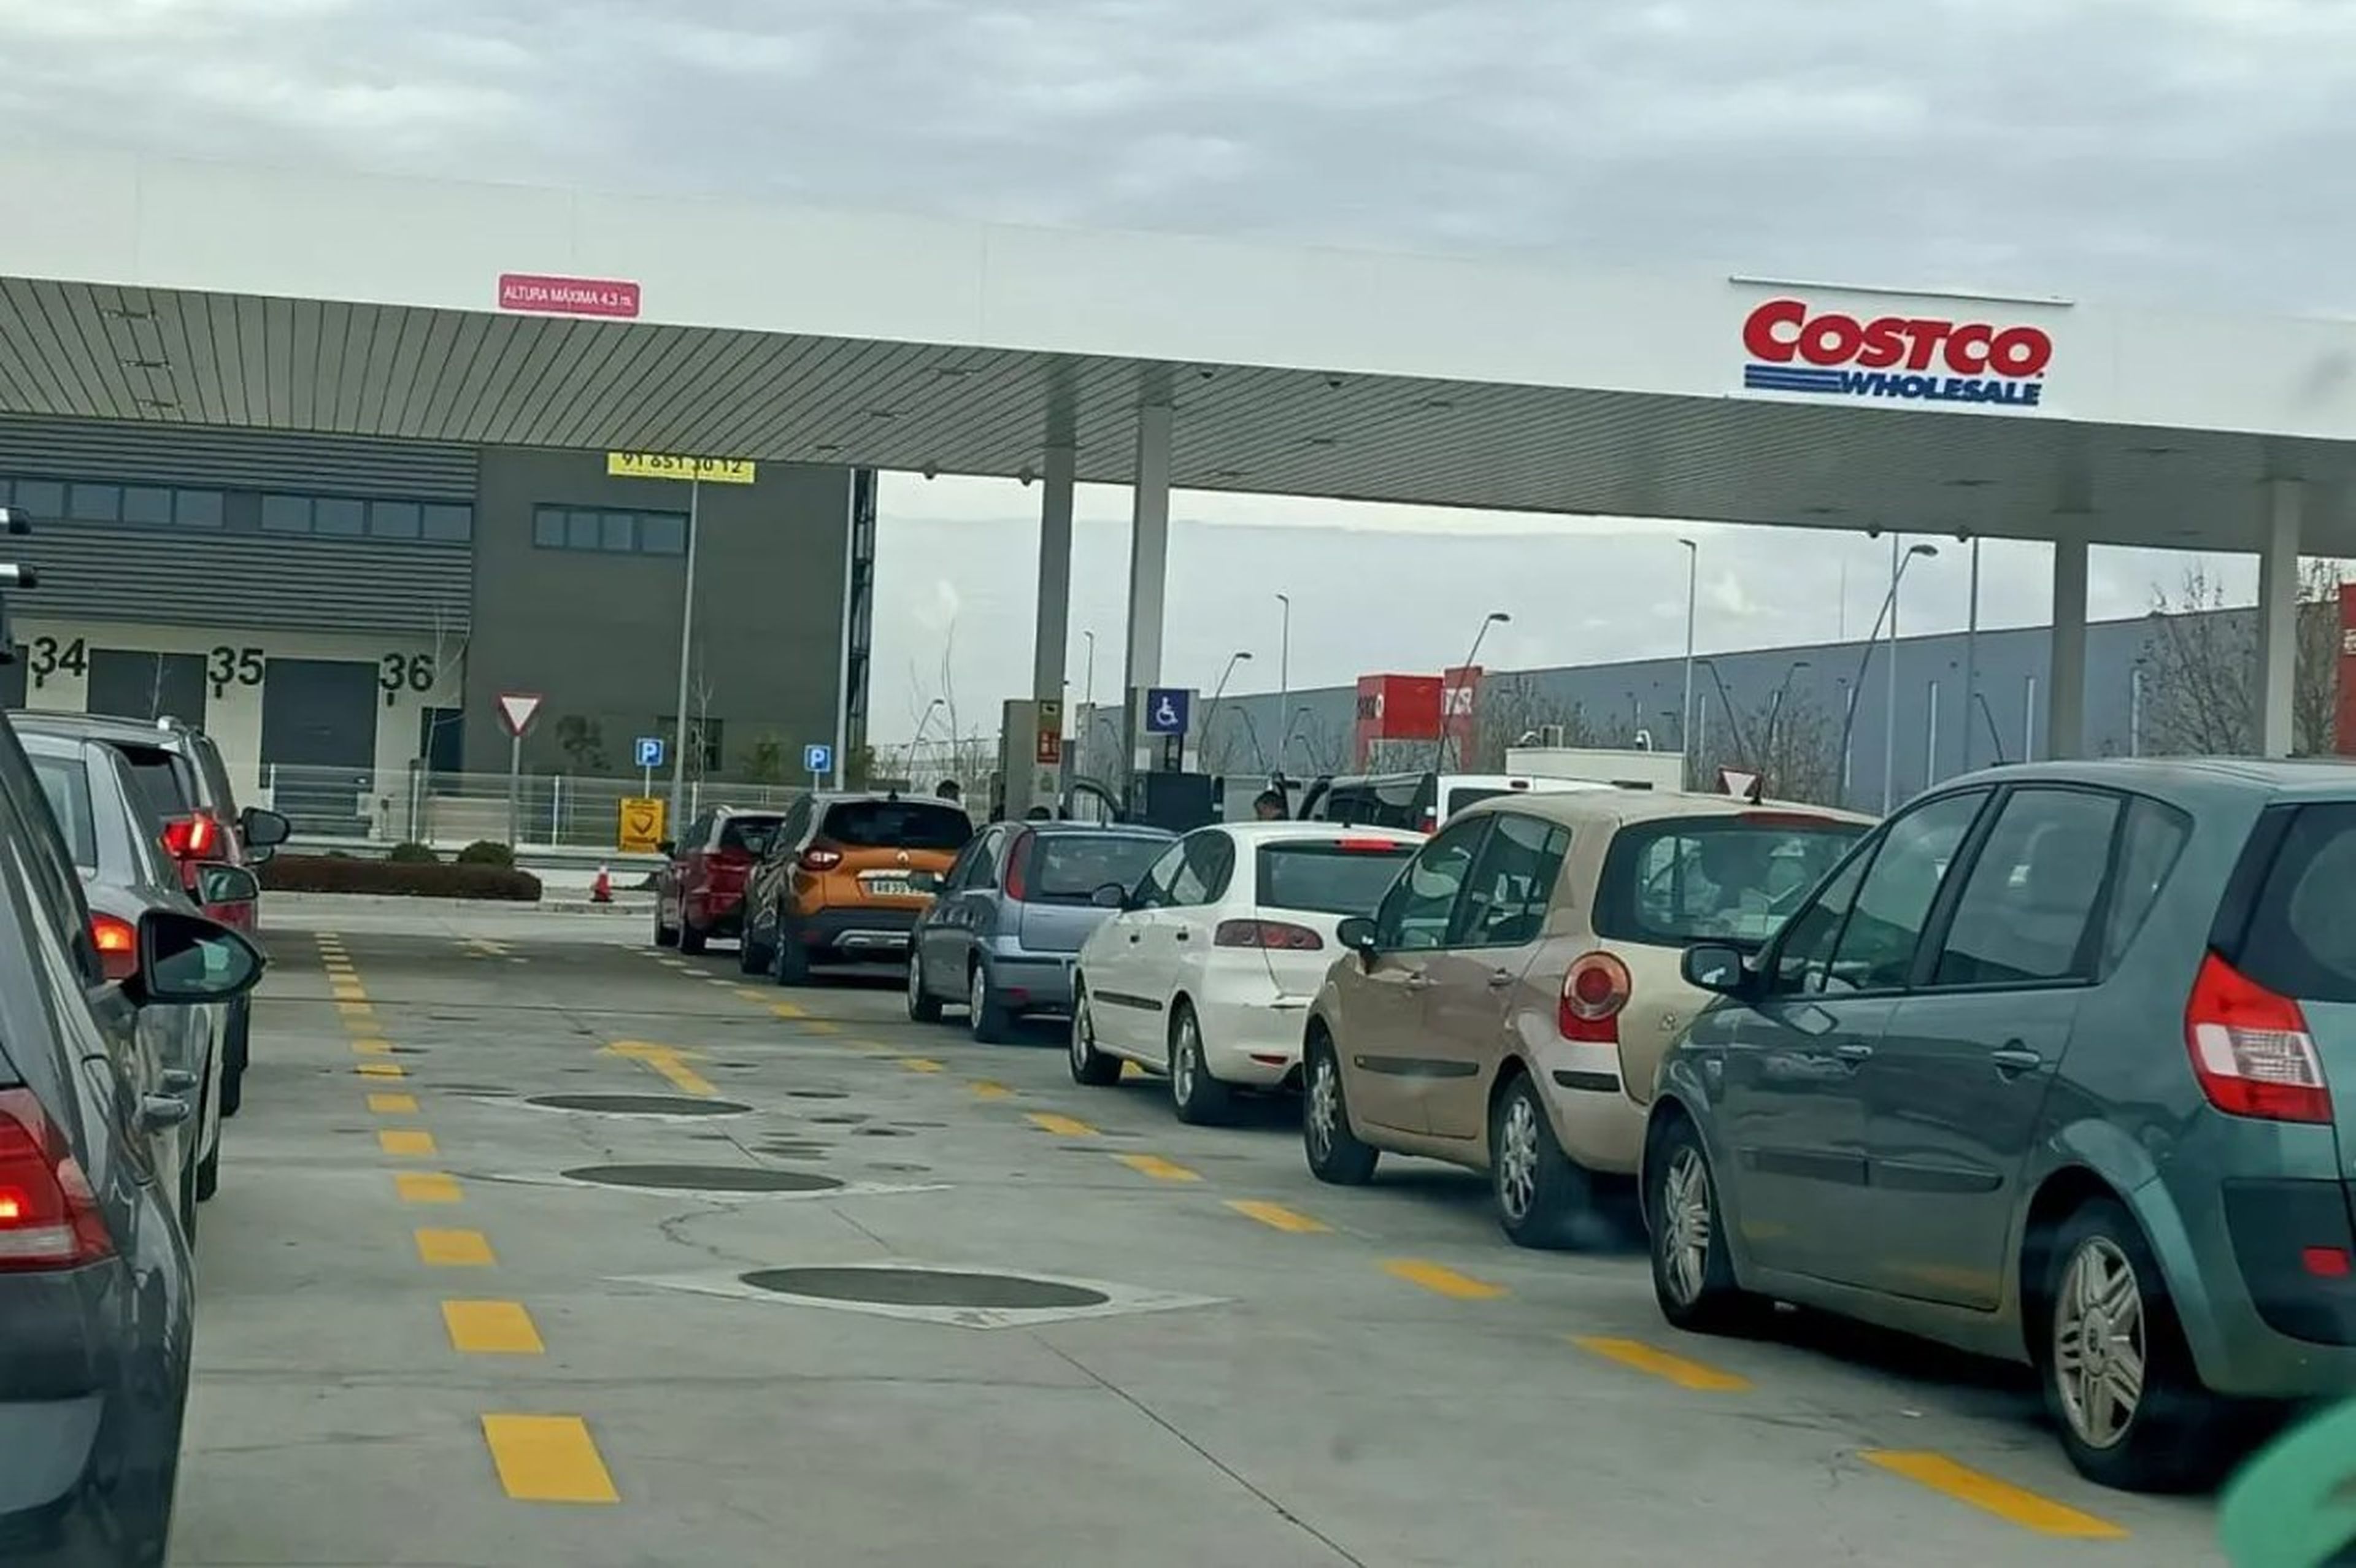 Precio de la gasolina en las gasolineras Costco de España